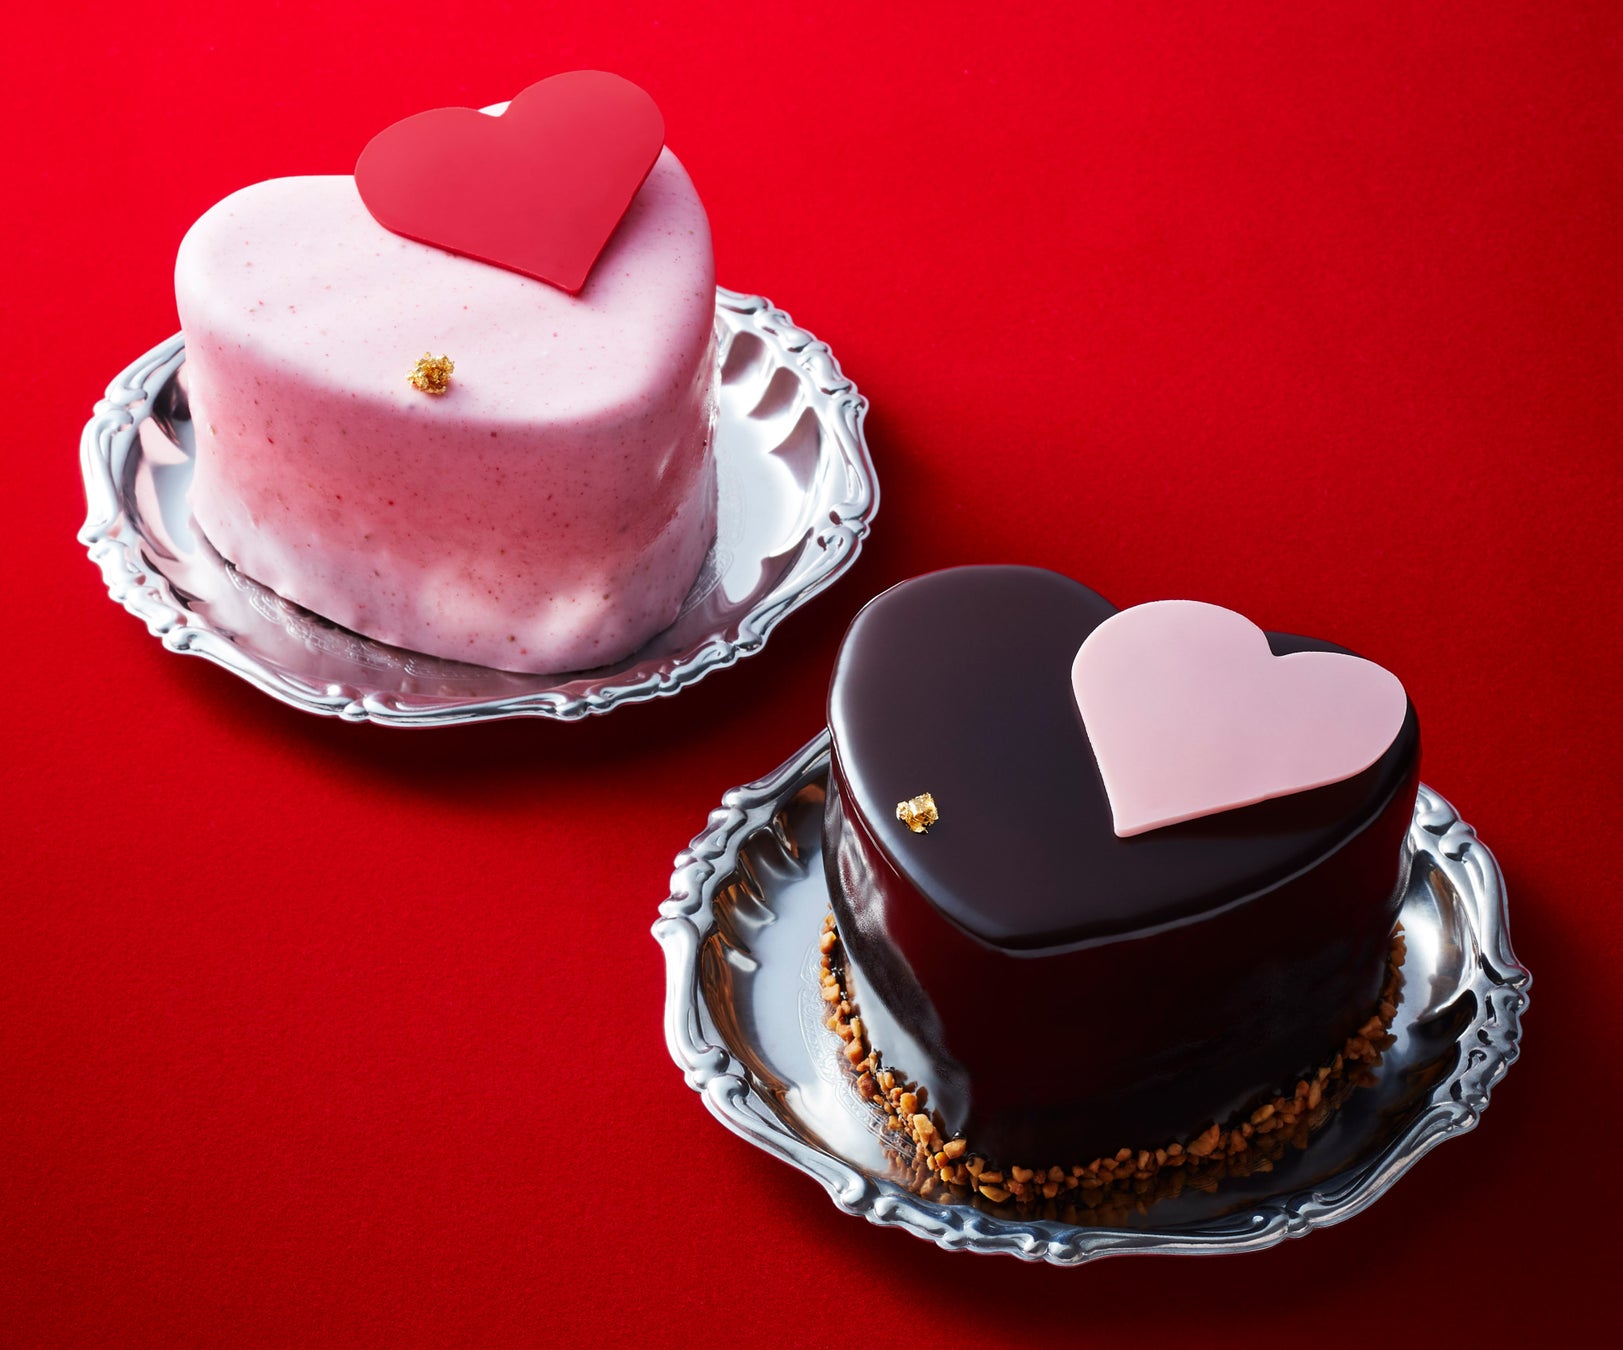 【アンテノール】　濃厚チョコレートケーキで楽しむバレンタイン2/11 ～ 14 の 4 日間限定販売